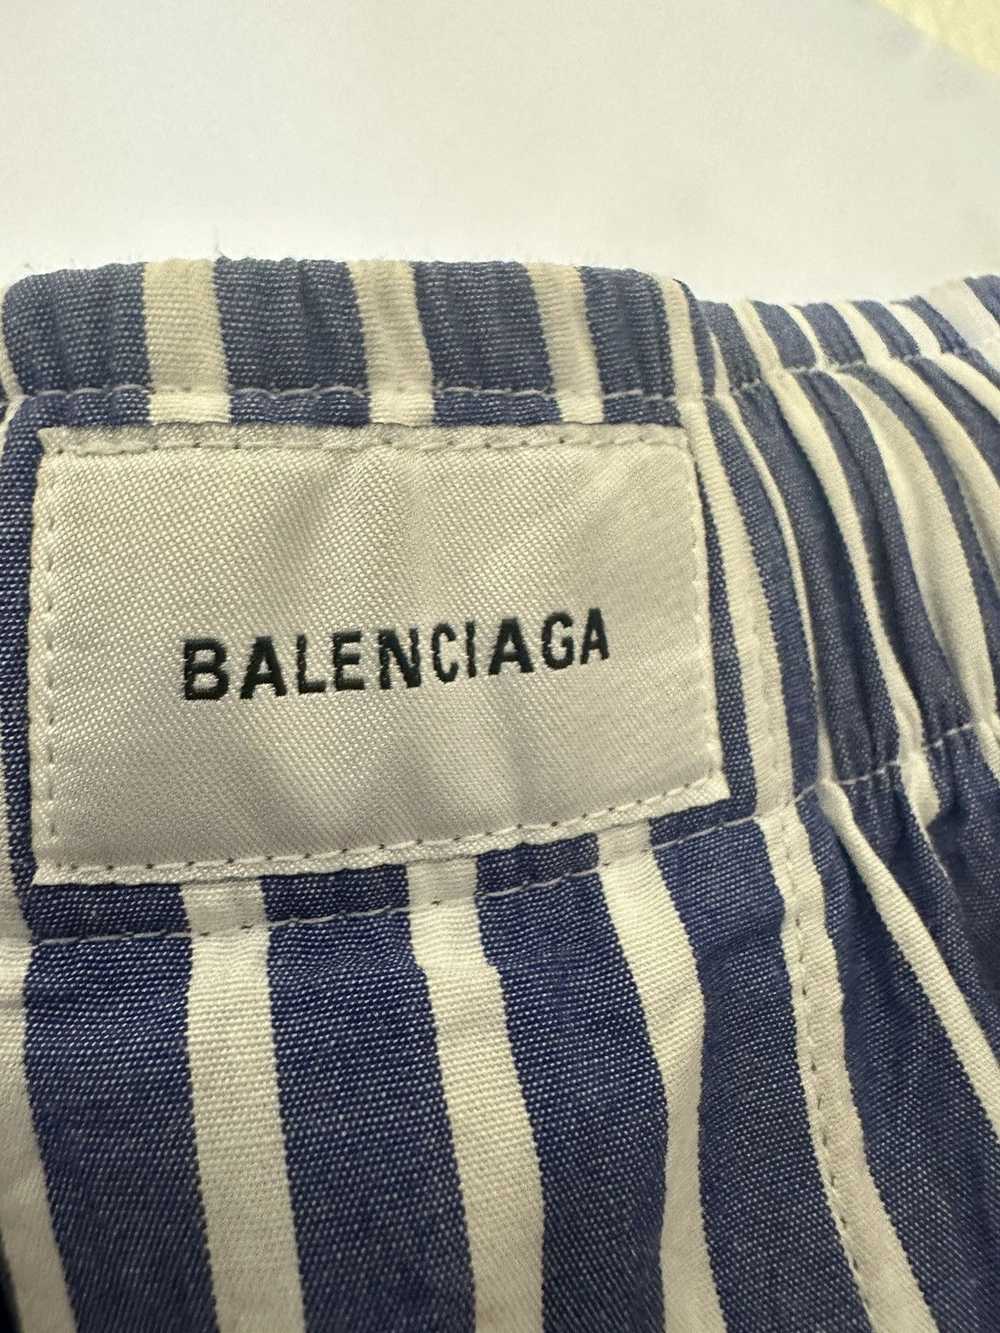 Balenciaga Balenciaga boxer/ pajama shorts - image 4